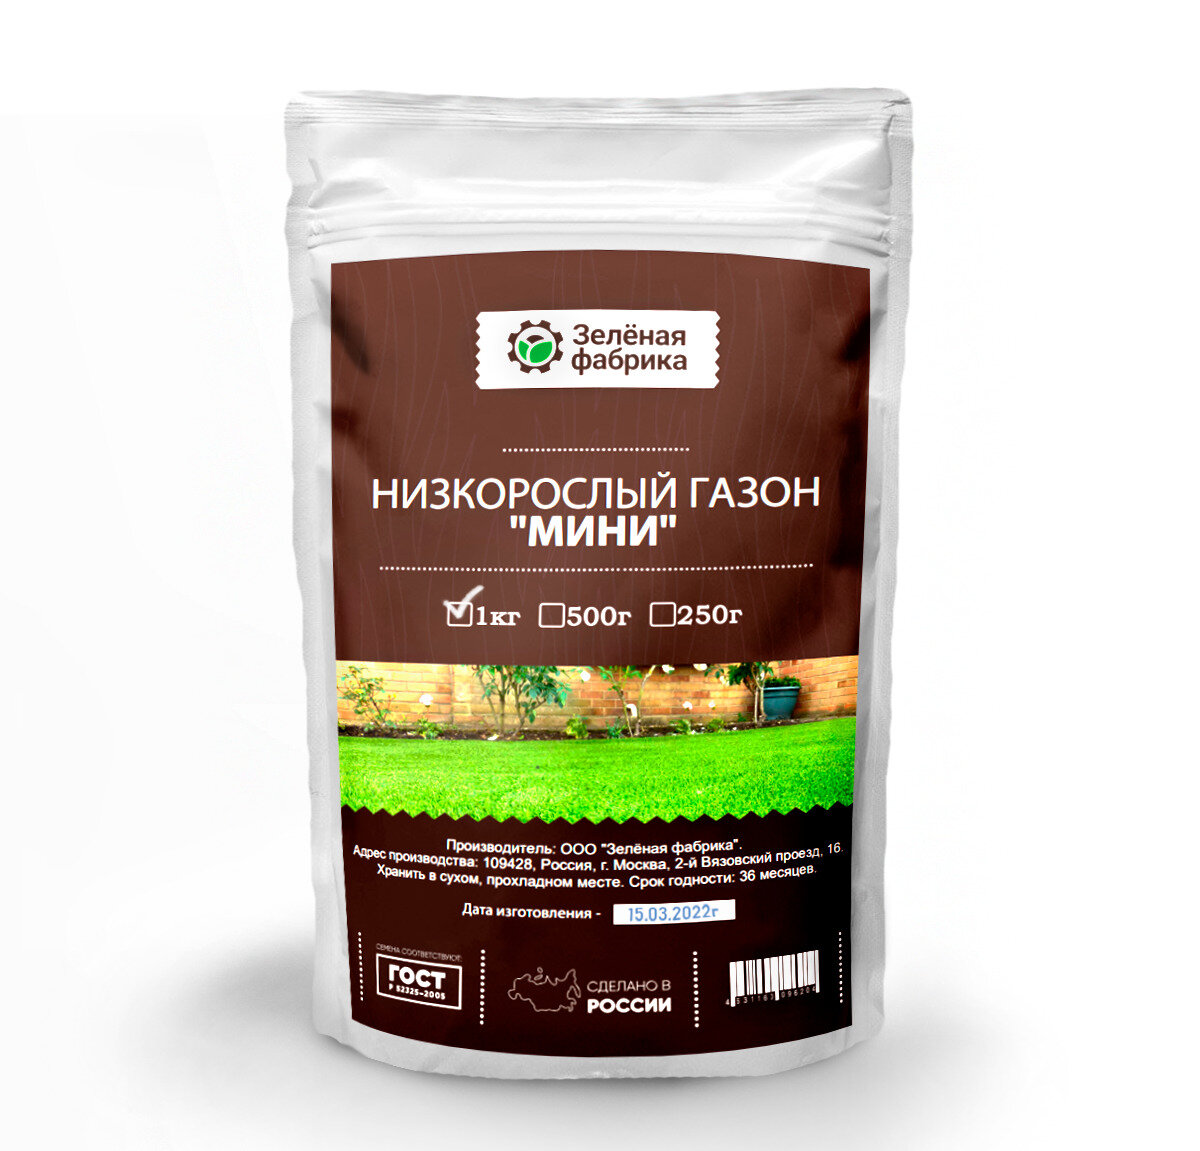 Низкорослый газон "Мини" 1 кг - семена газонной травы - Зелёная фабрика